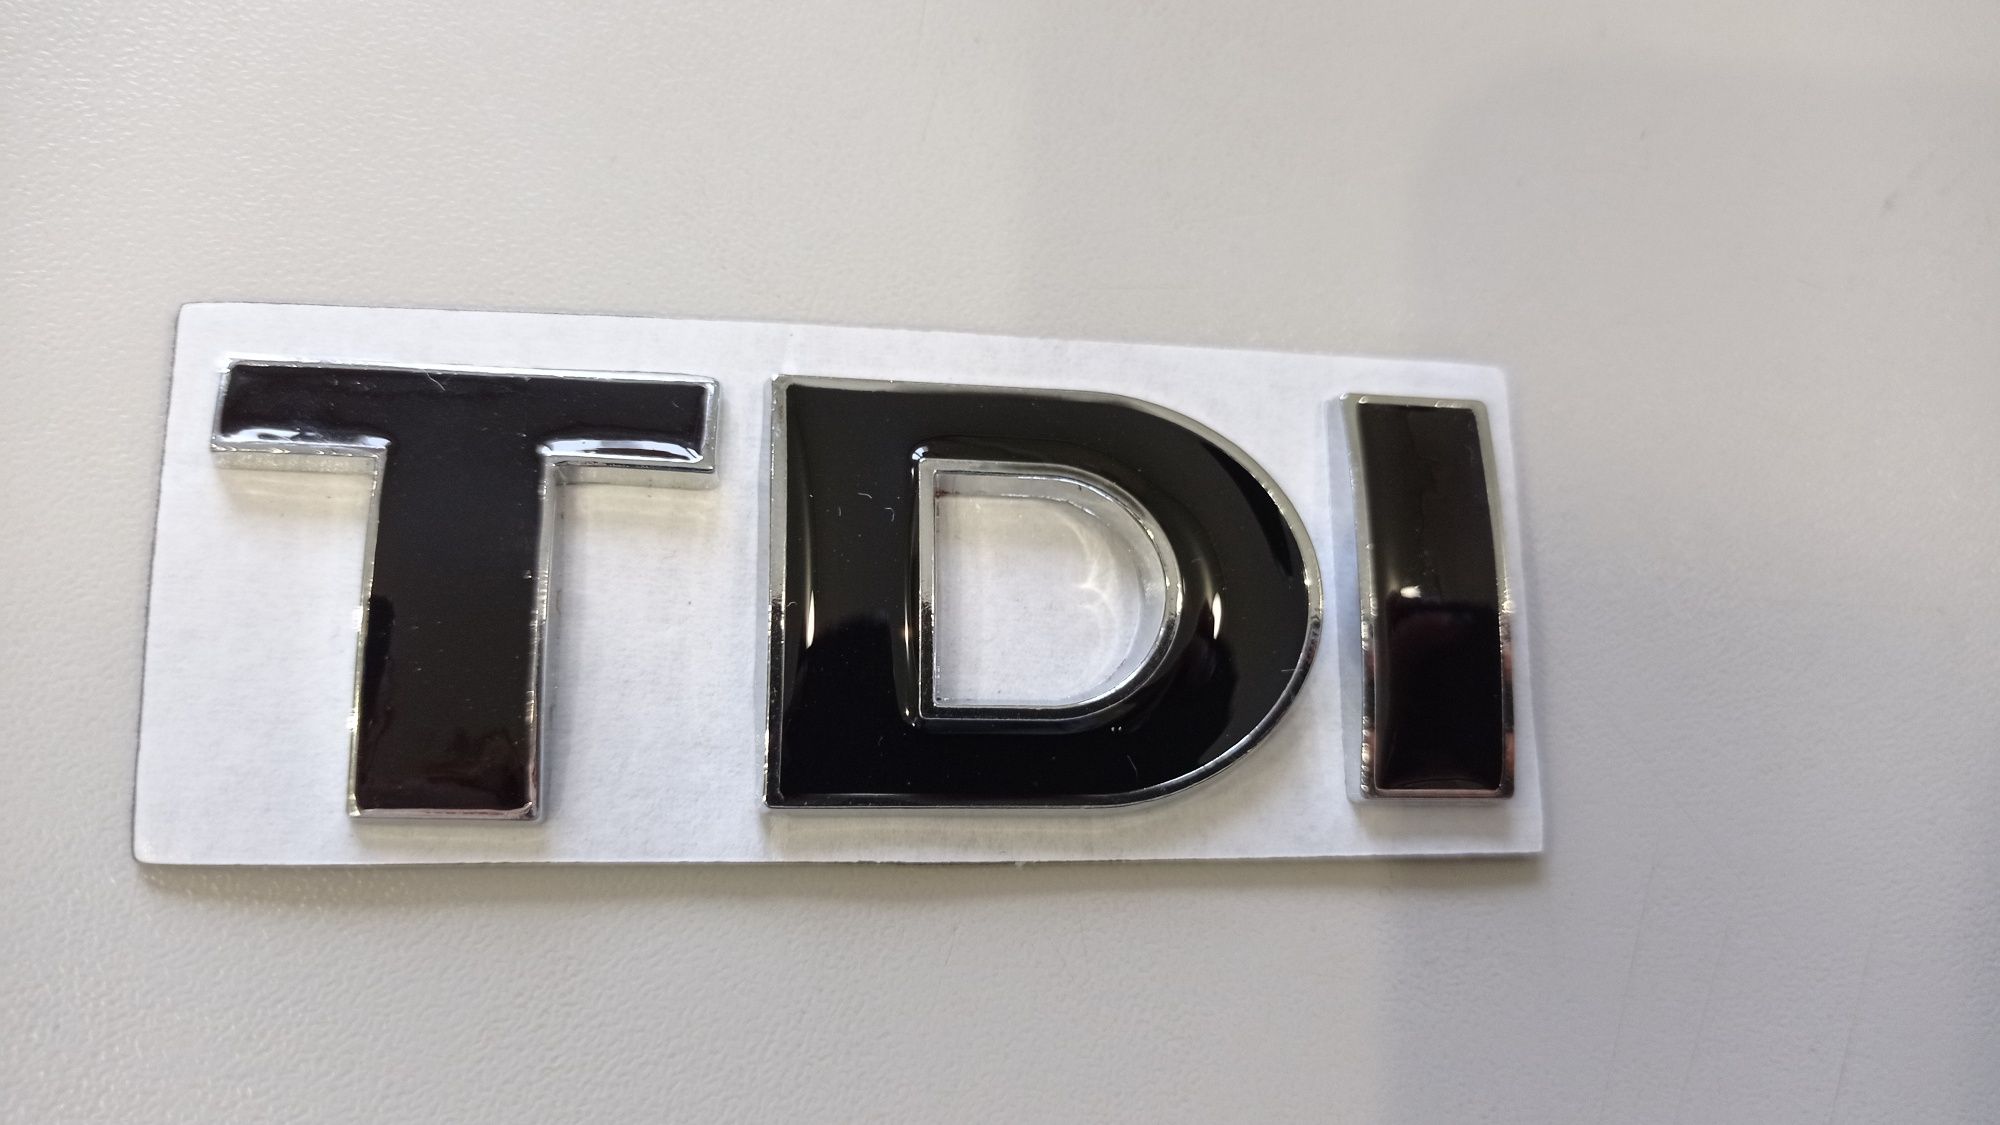 Шильдик TDI, эмблема, значок TDI.